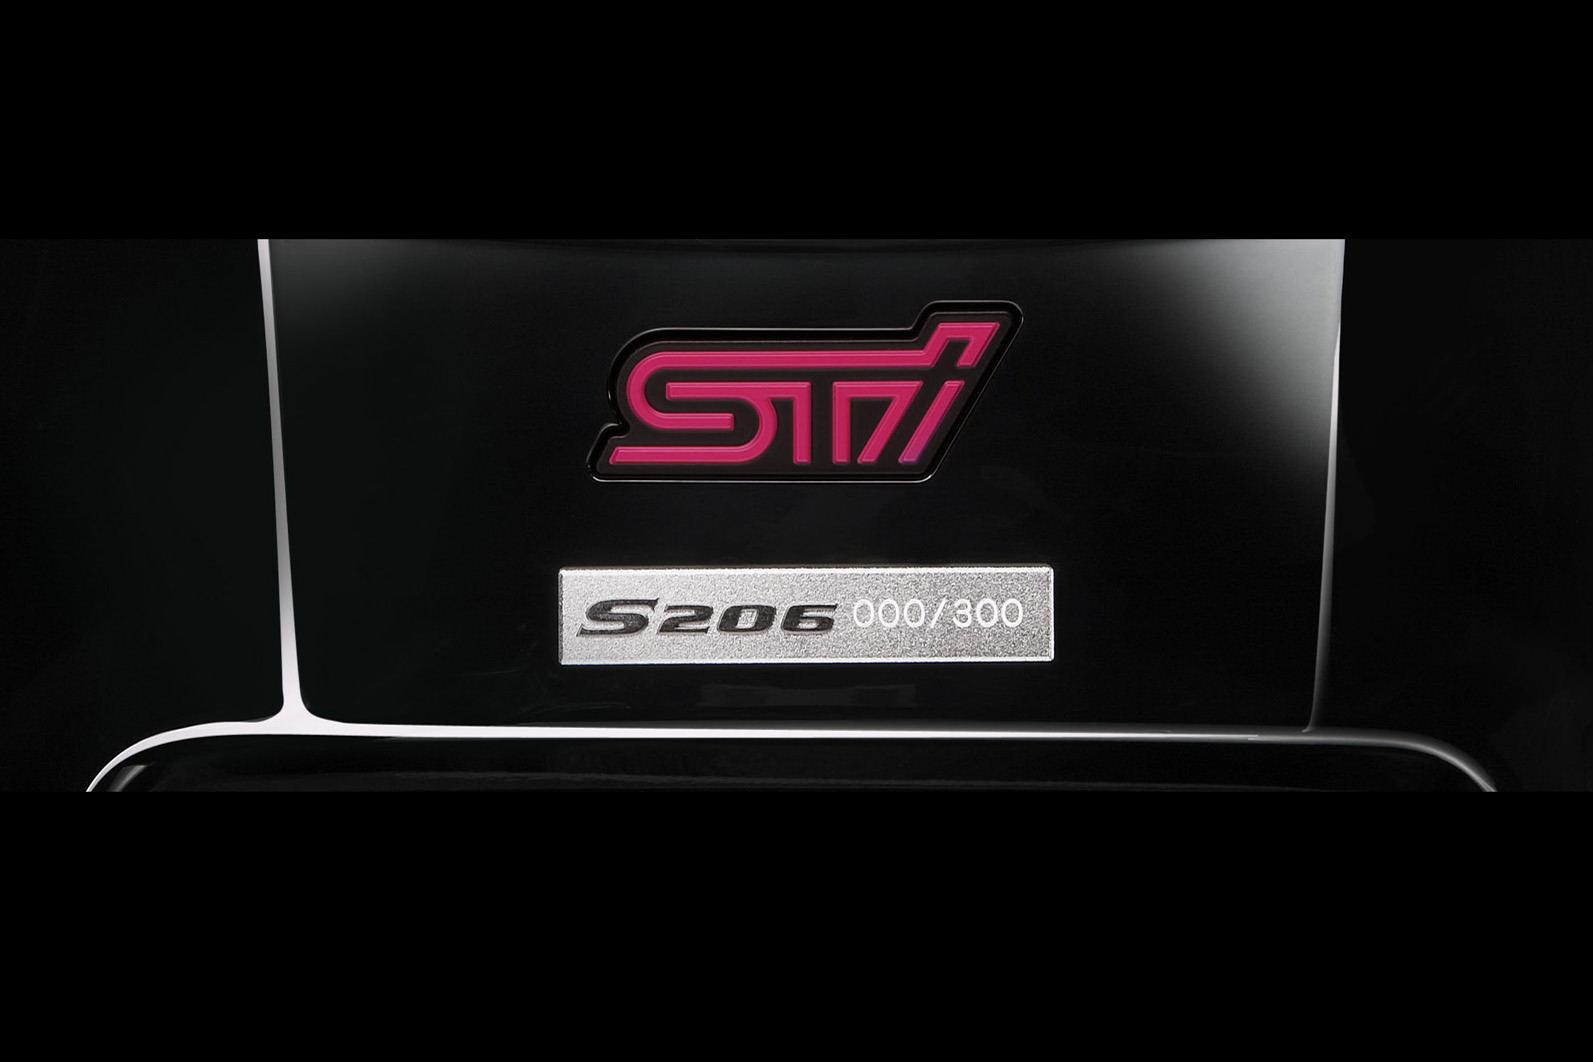 New! Subaru Sti S206